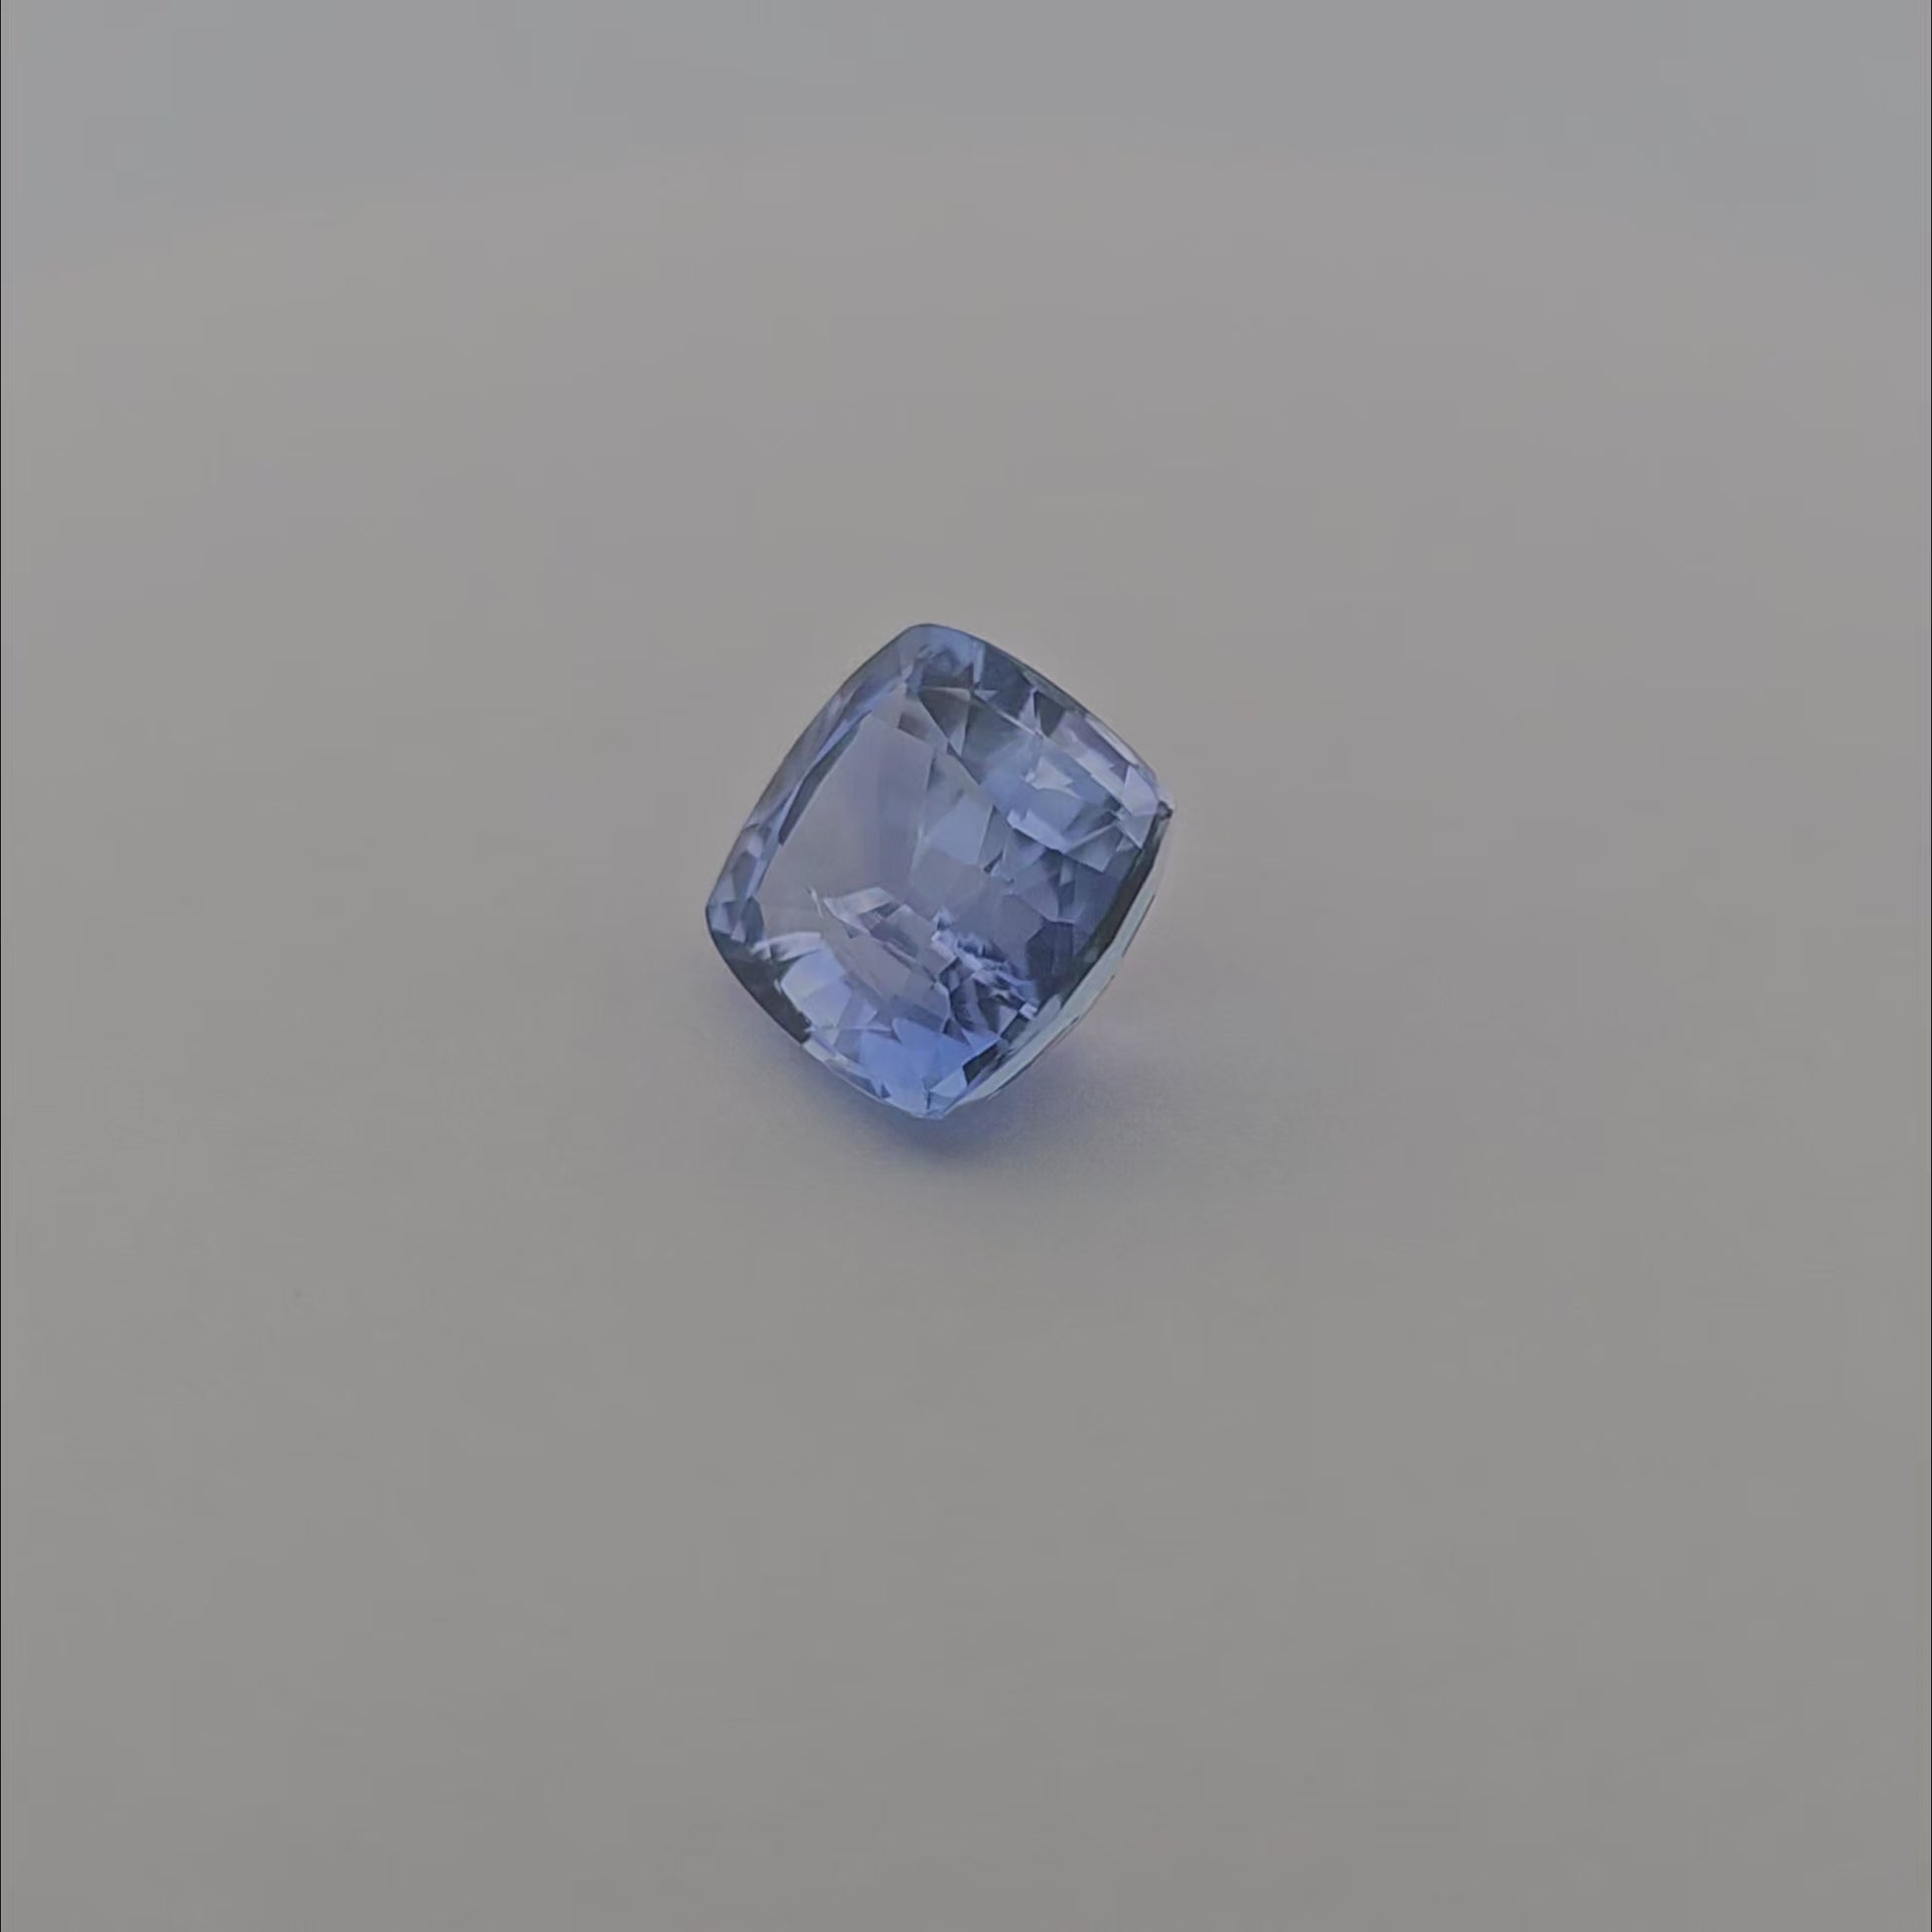 Natural Blue Sapphire Stone 5.17 Carats Cushion Cut